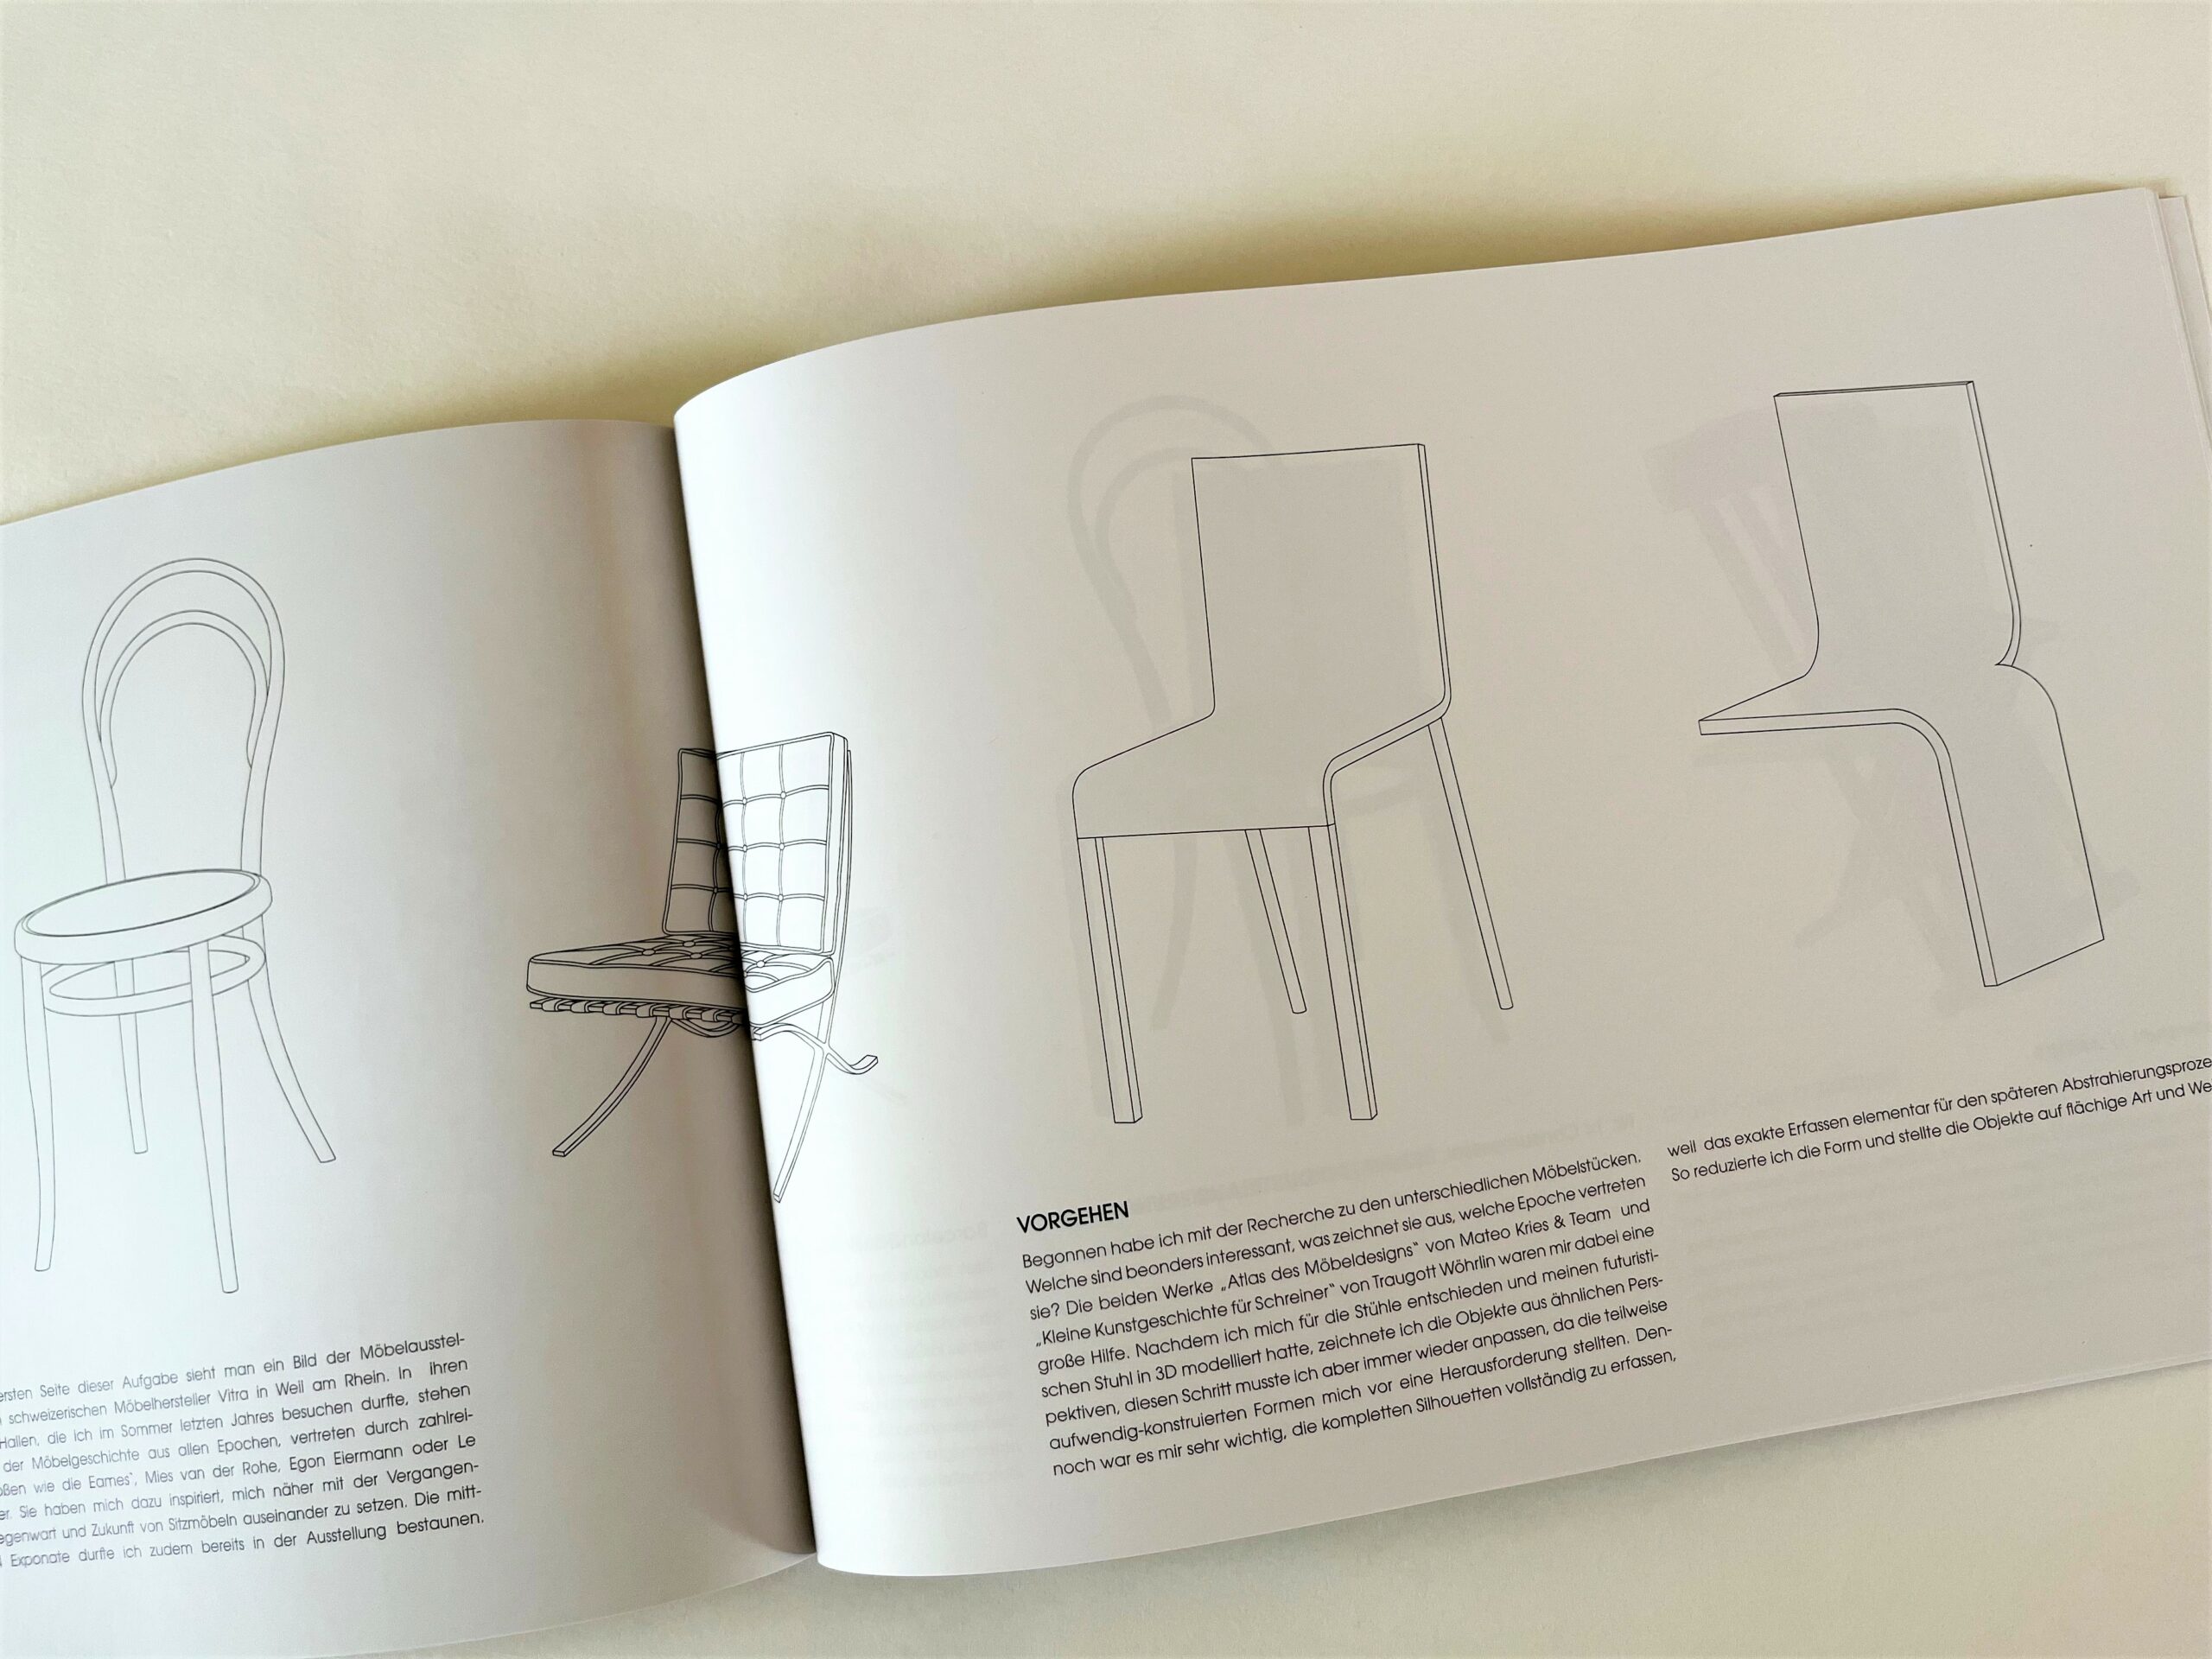 Dokumentation aufgeschlagen, Skizzen von Designerstühlen